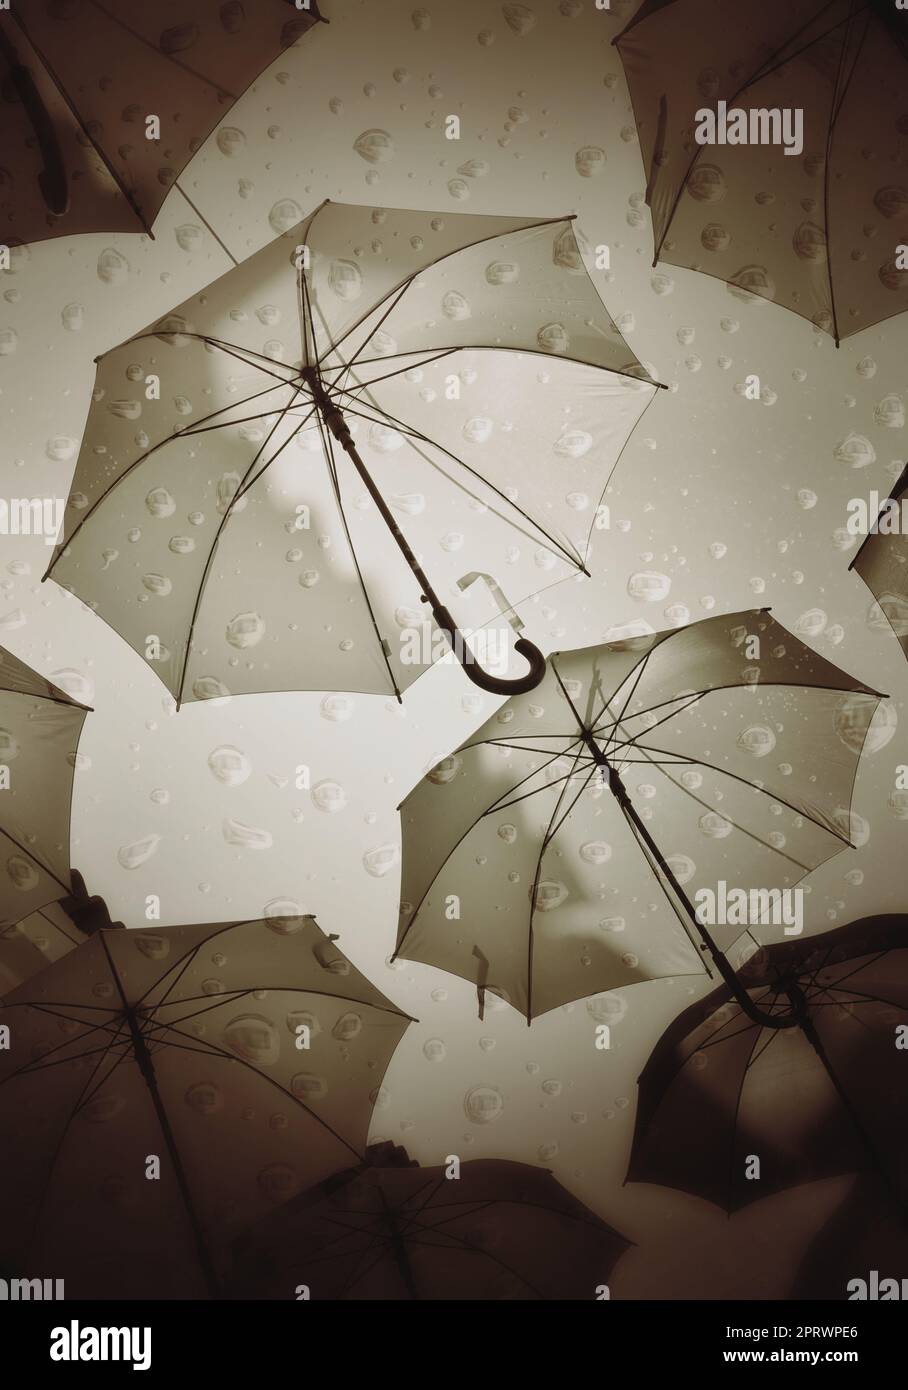 Images superposées de gouttes de pluie et de parapluies comme une  représentation de mauvais temps Photo Stock - Alamy